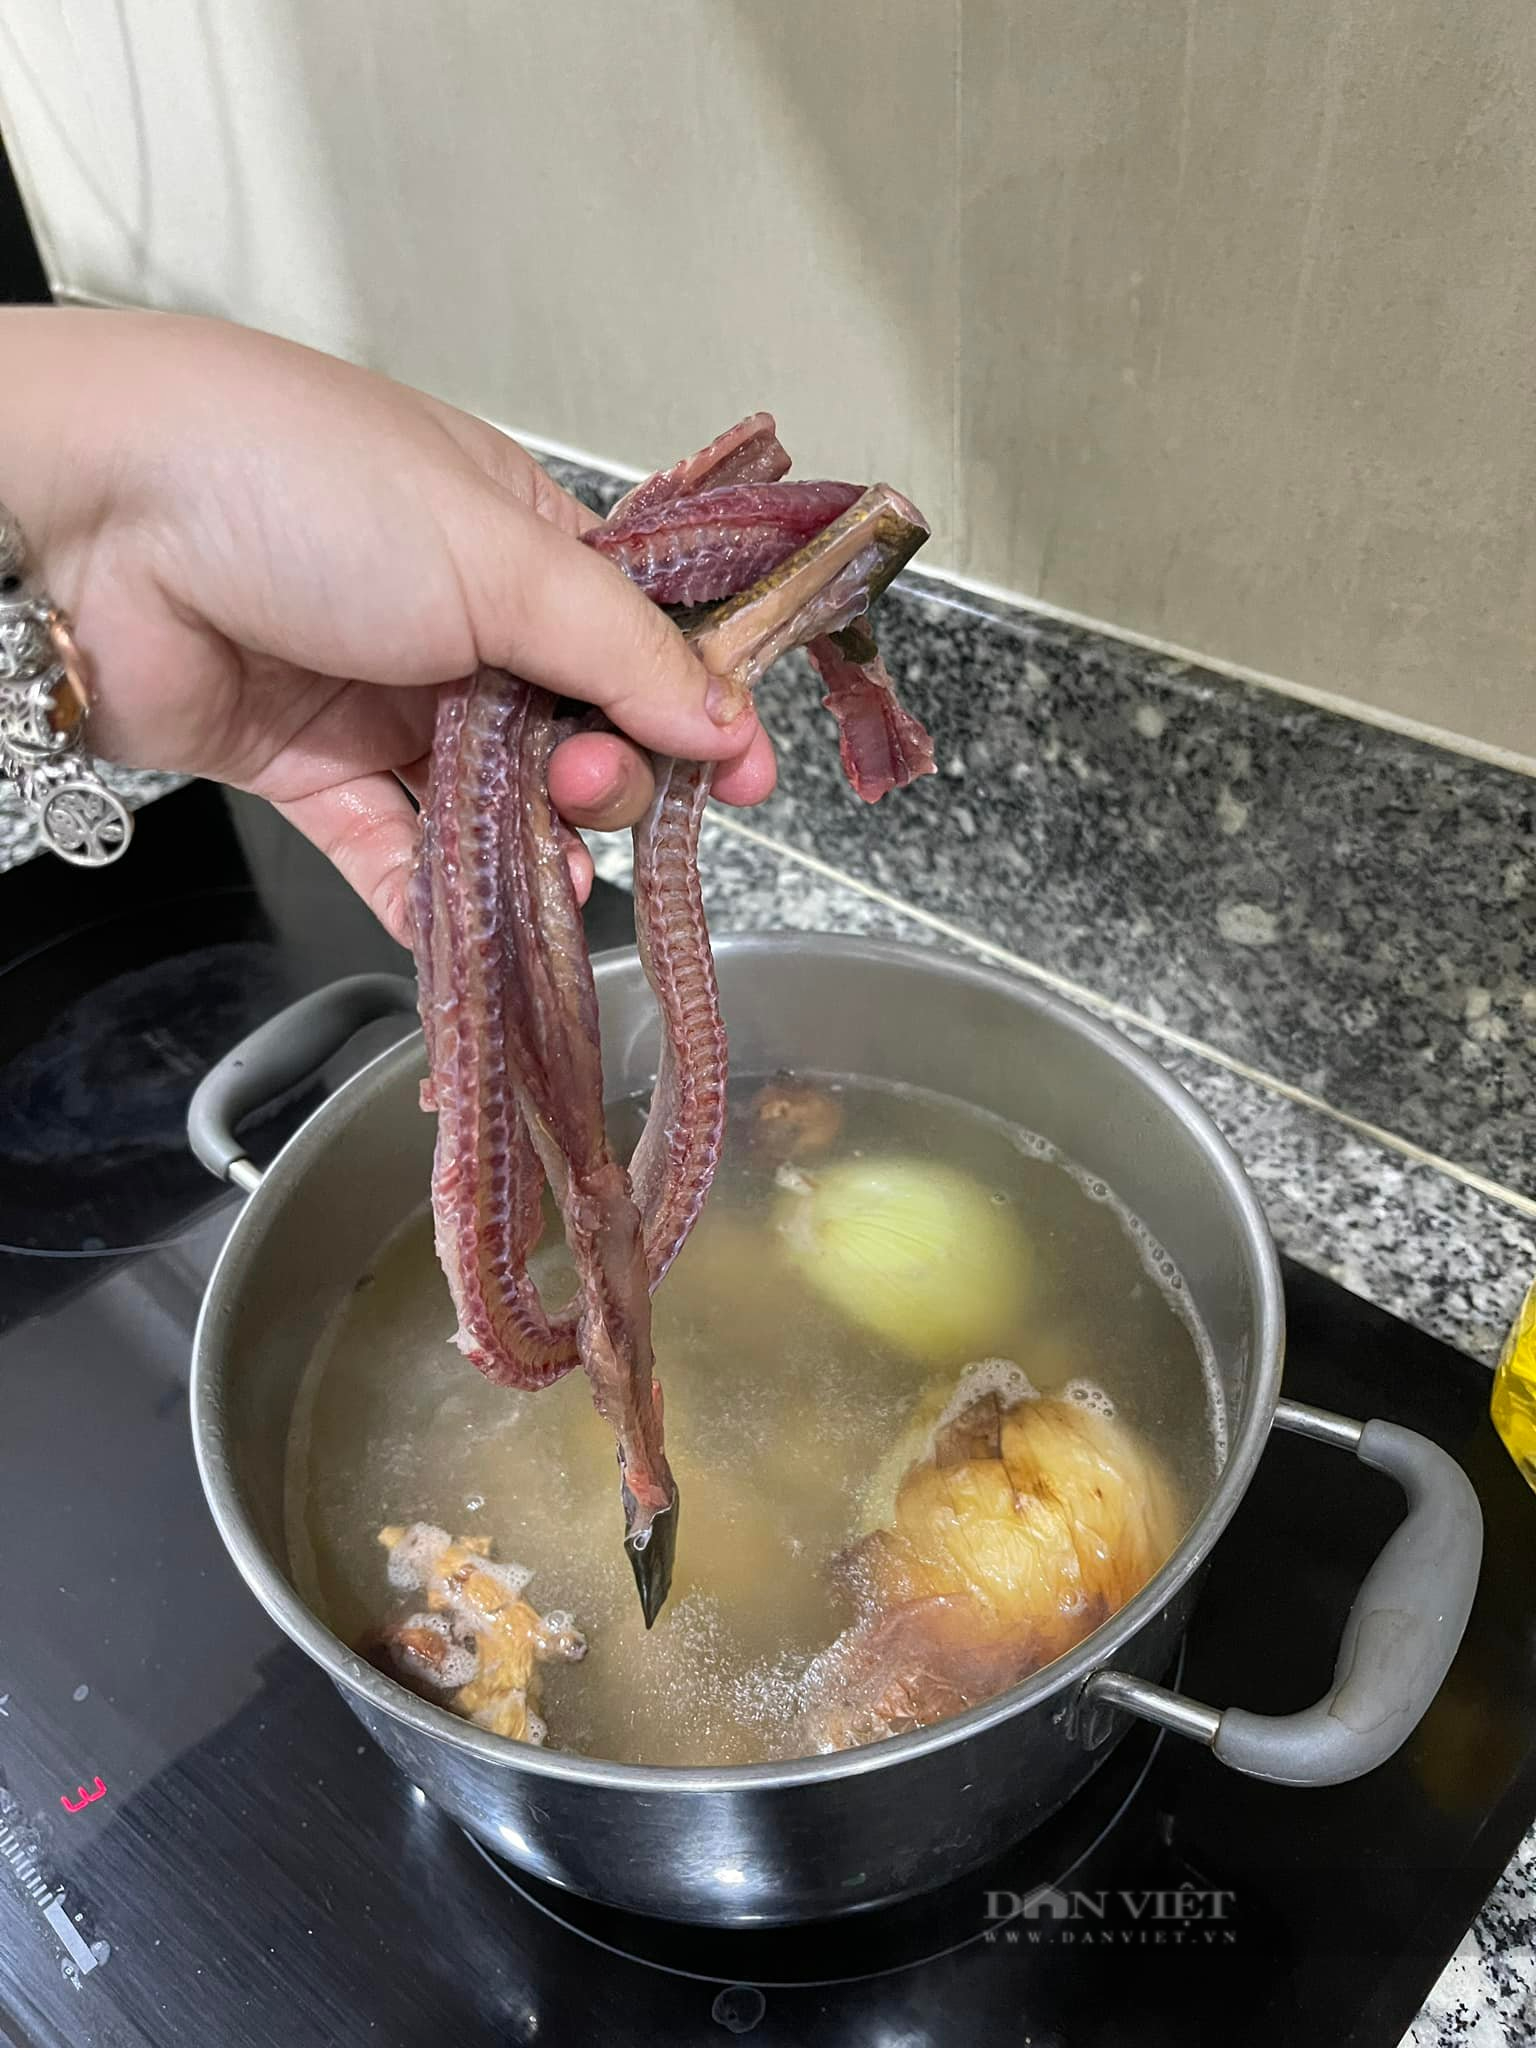 Nấu món miến lươn giòn không bị tanh, đừng bỏ qua bí quyết này - Ảnh 5.